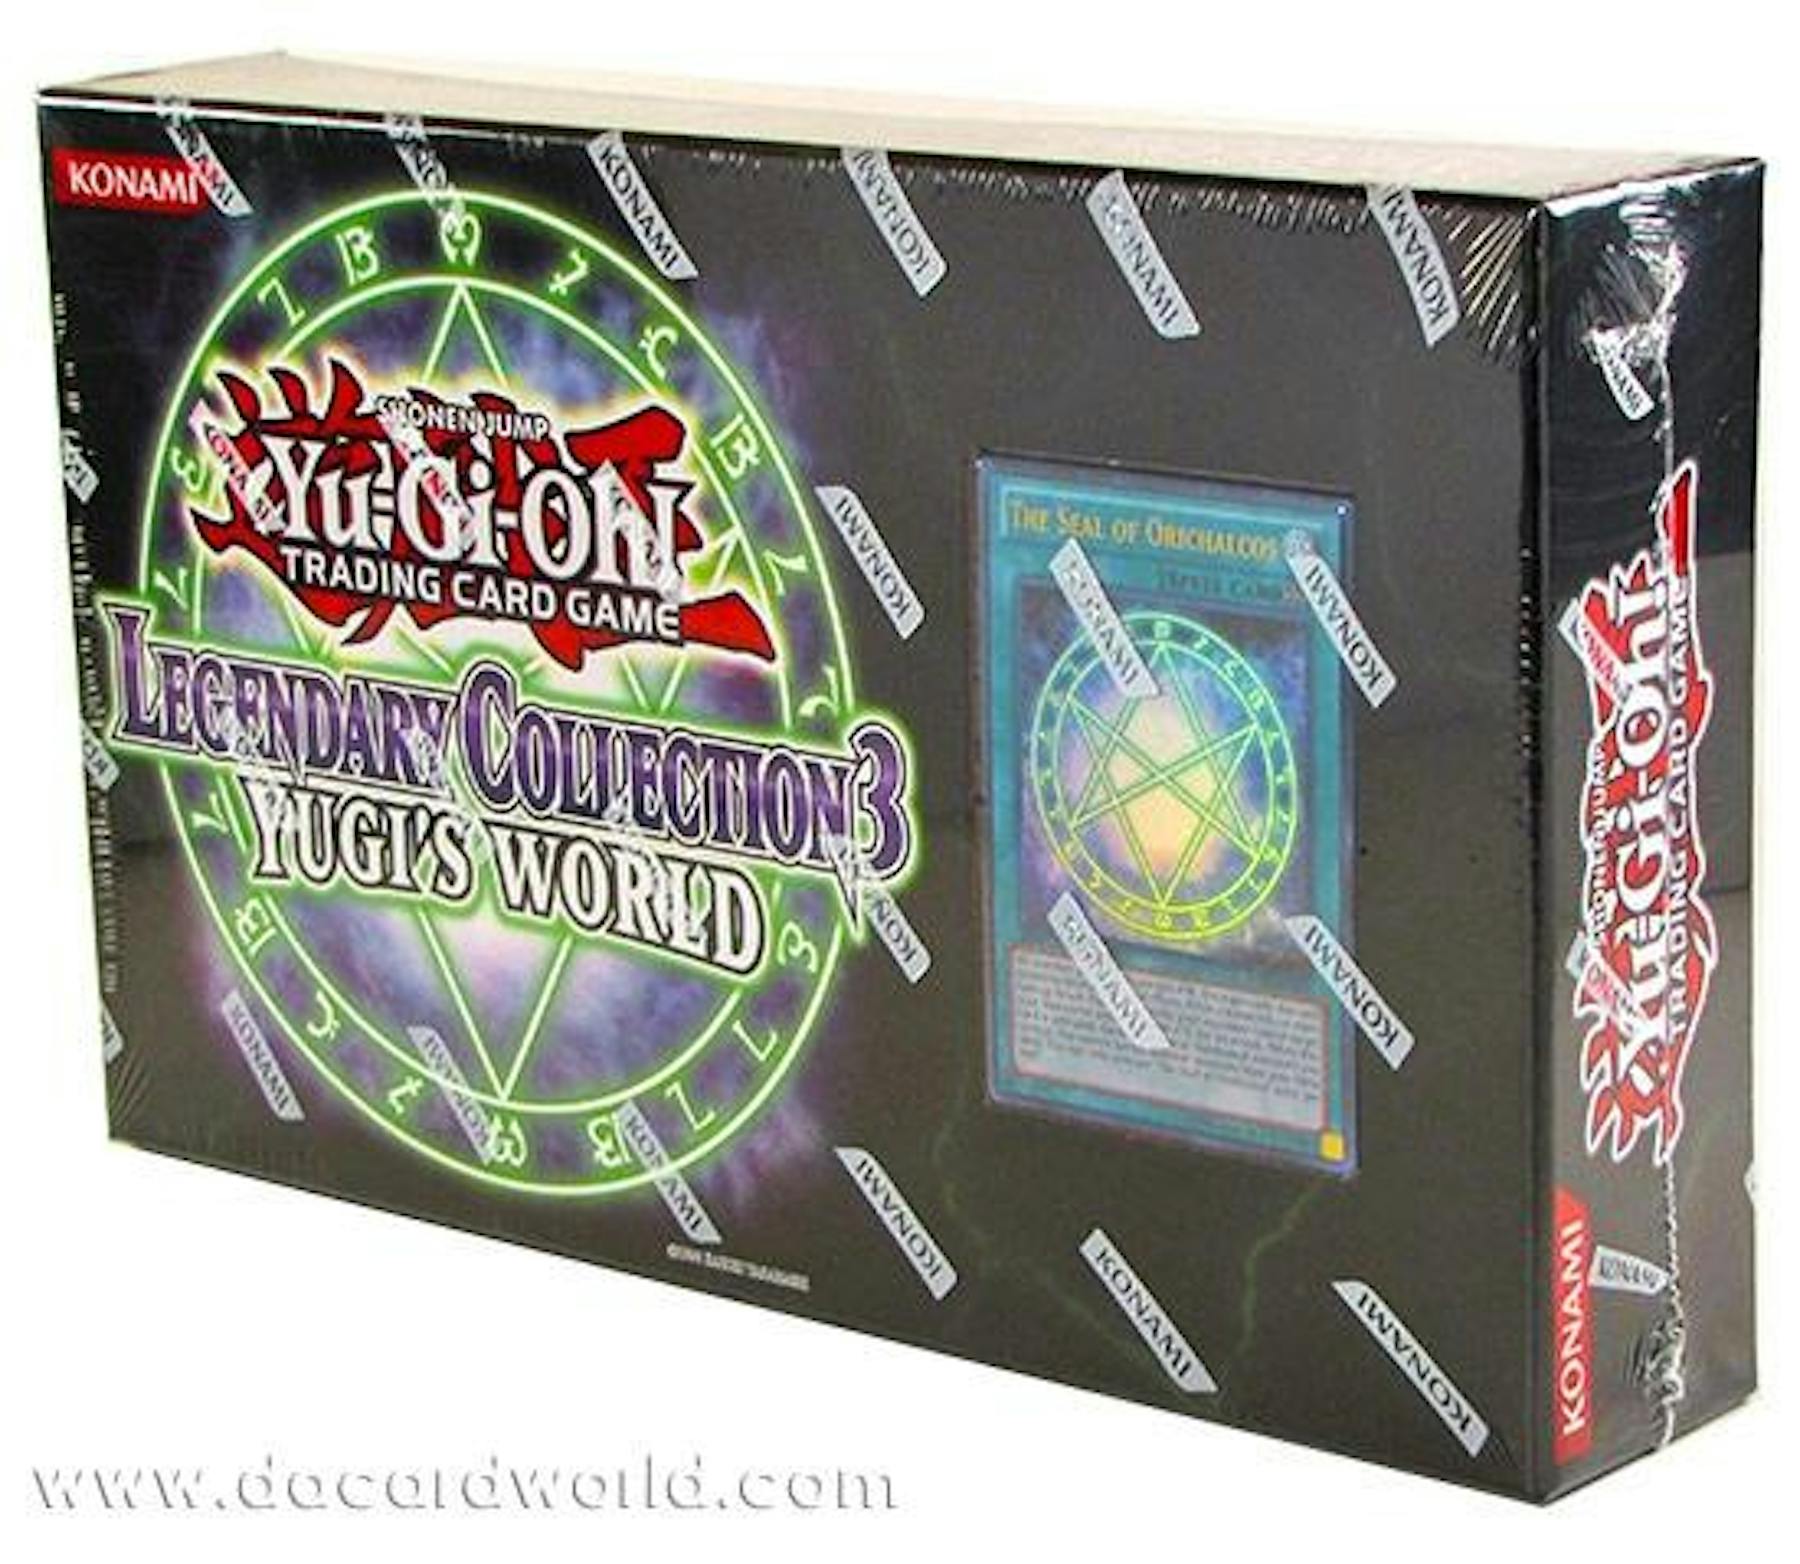 Yu Gi Oh Legendary Collection 3 Yugis World Box Da Card World